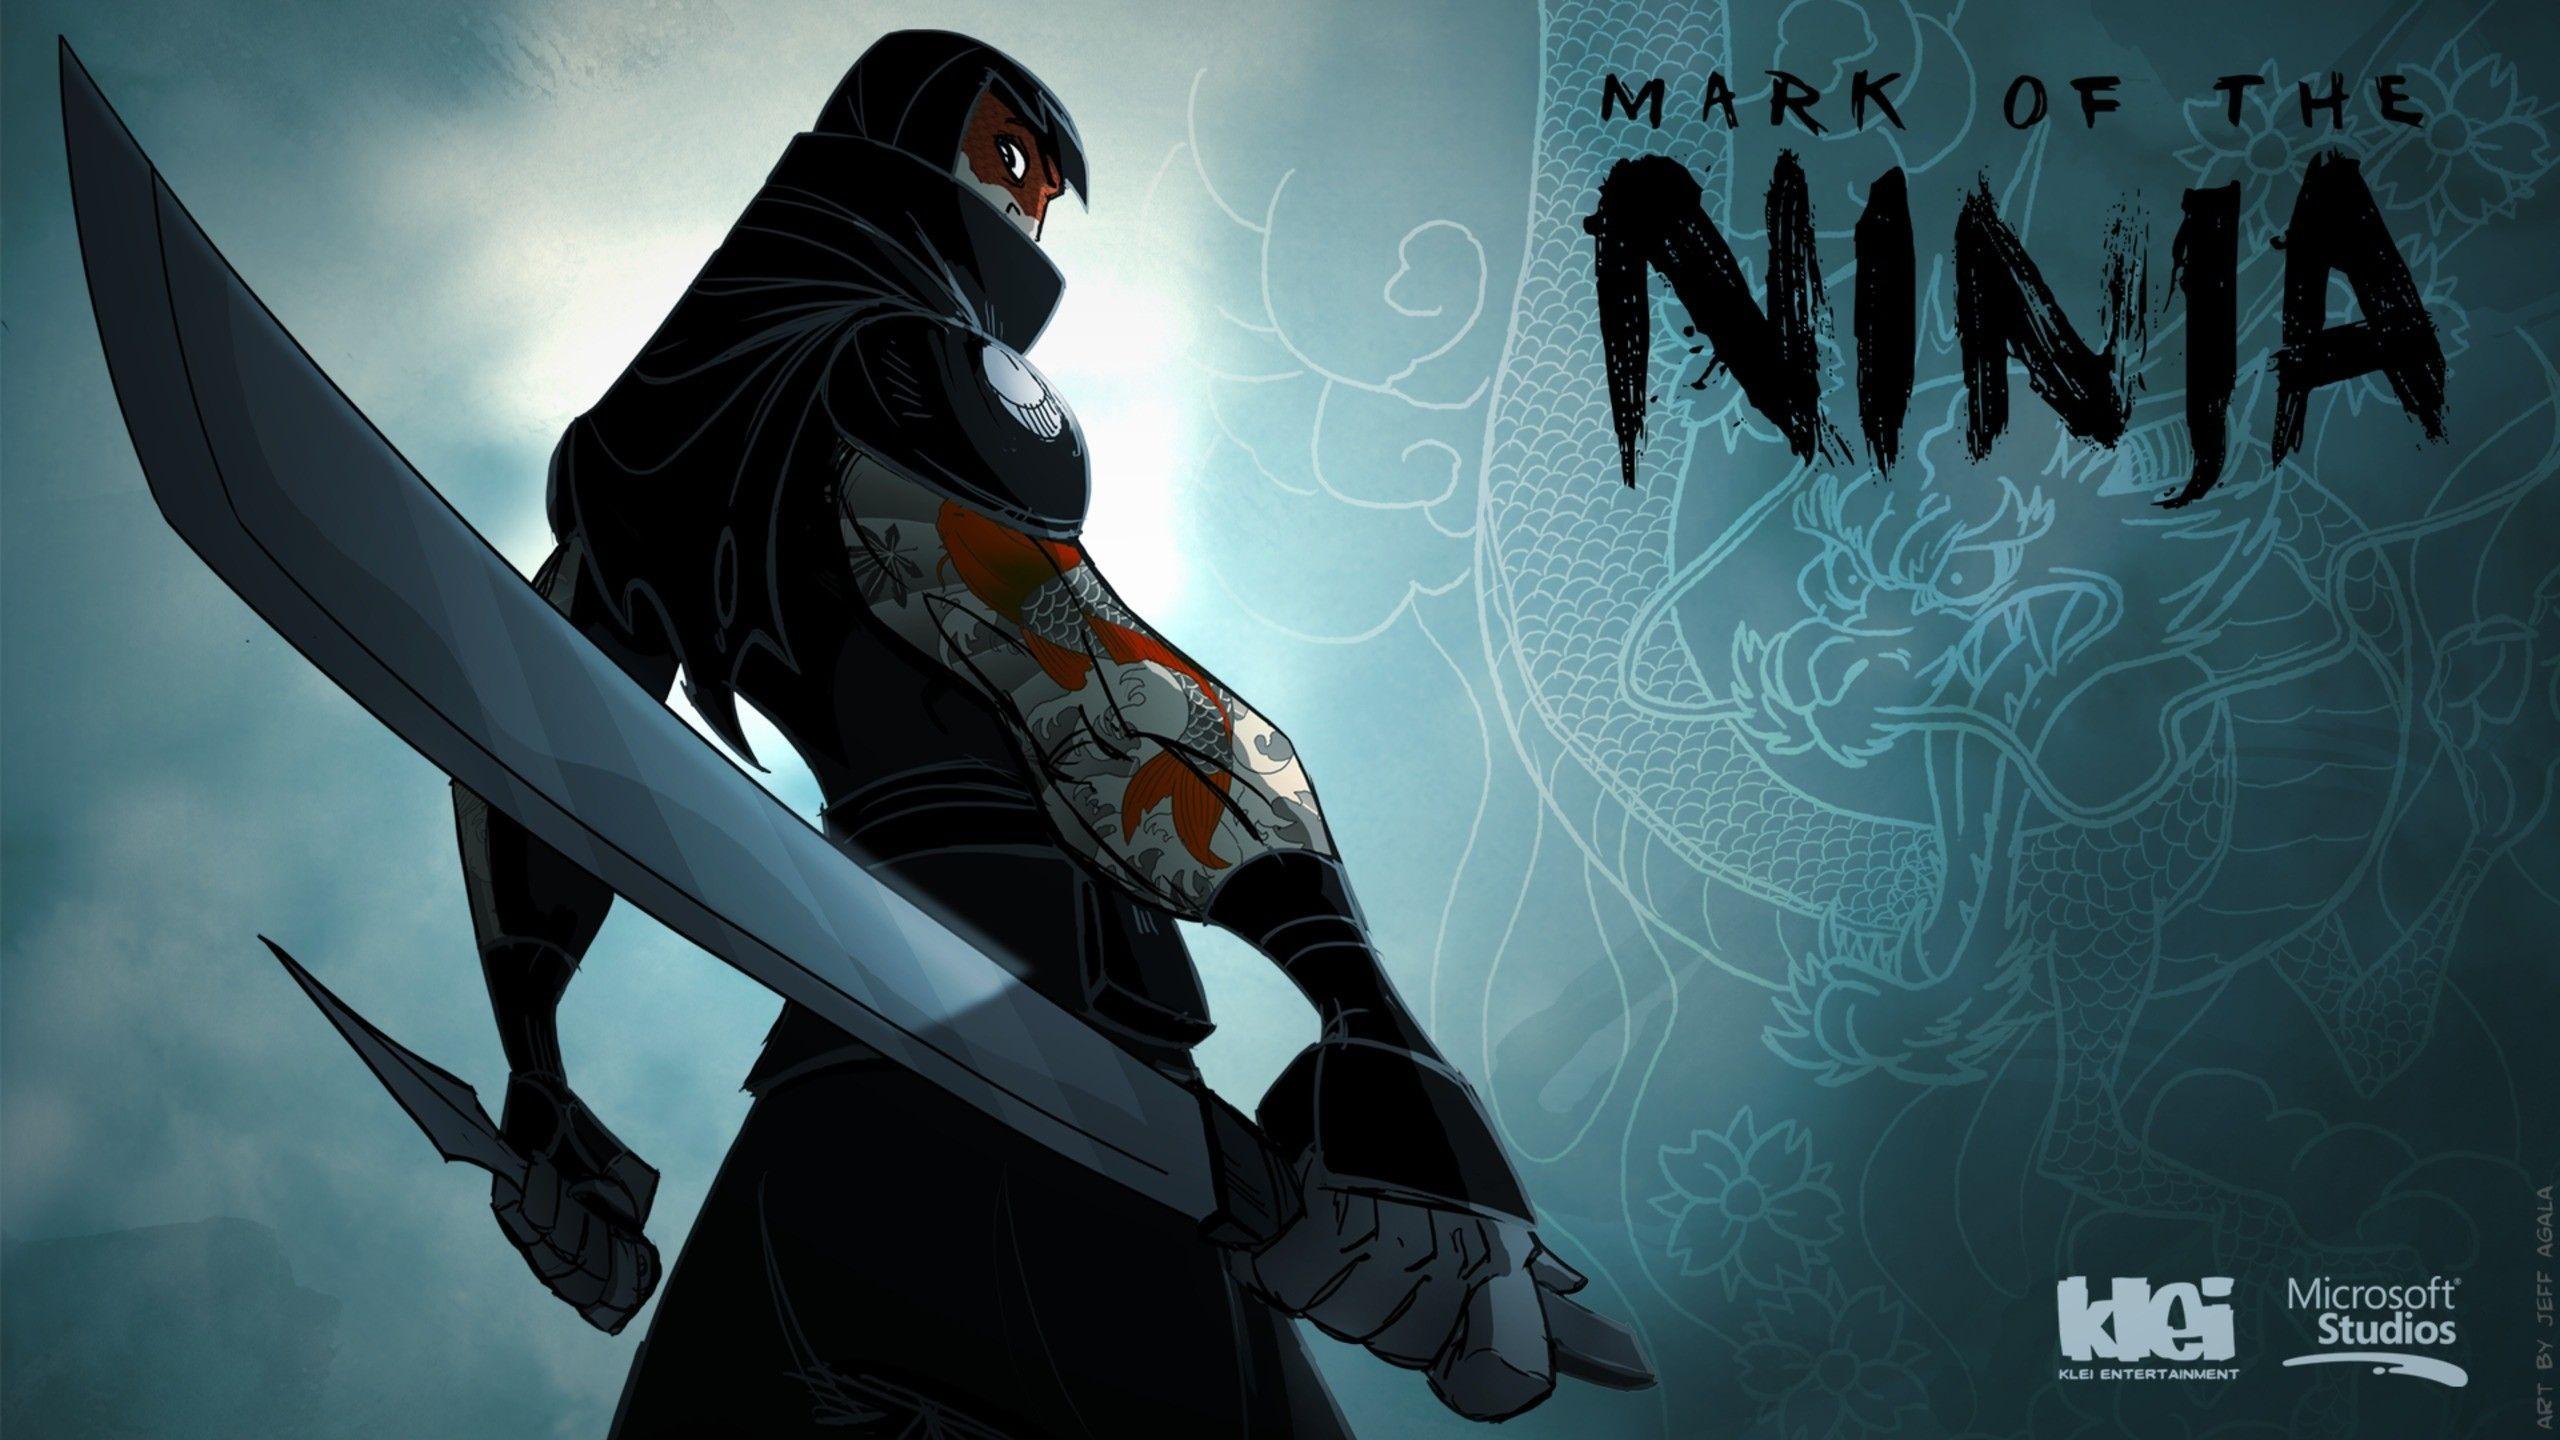 Anime Ninja Assassin Wallpapers - Top Free Anime Ninja Assassin Backgrounds  - WallpaperAccess